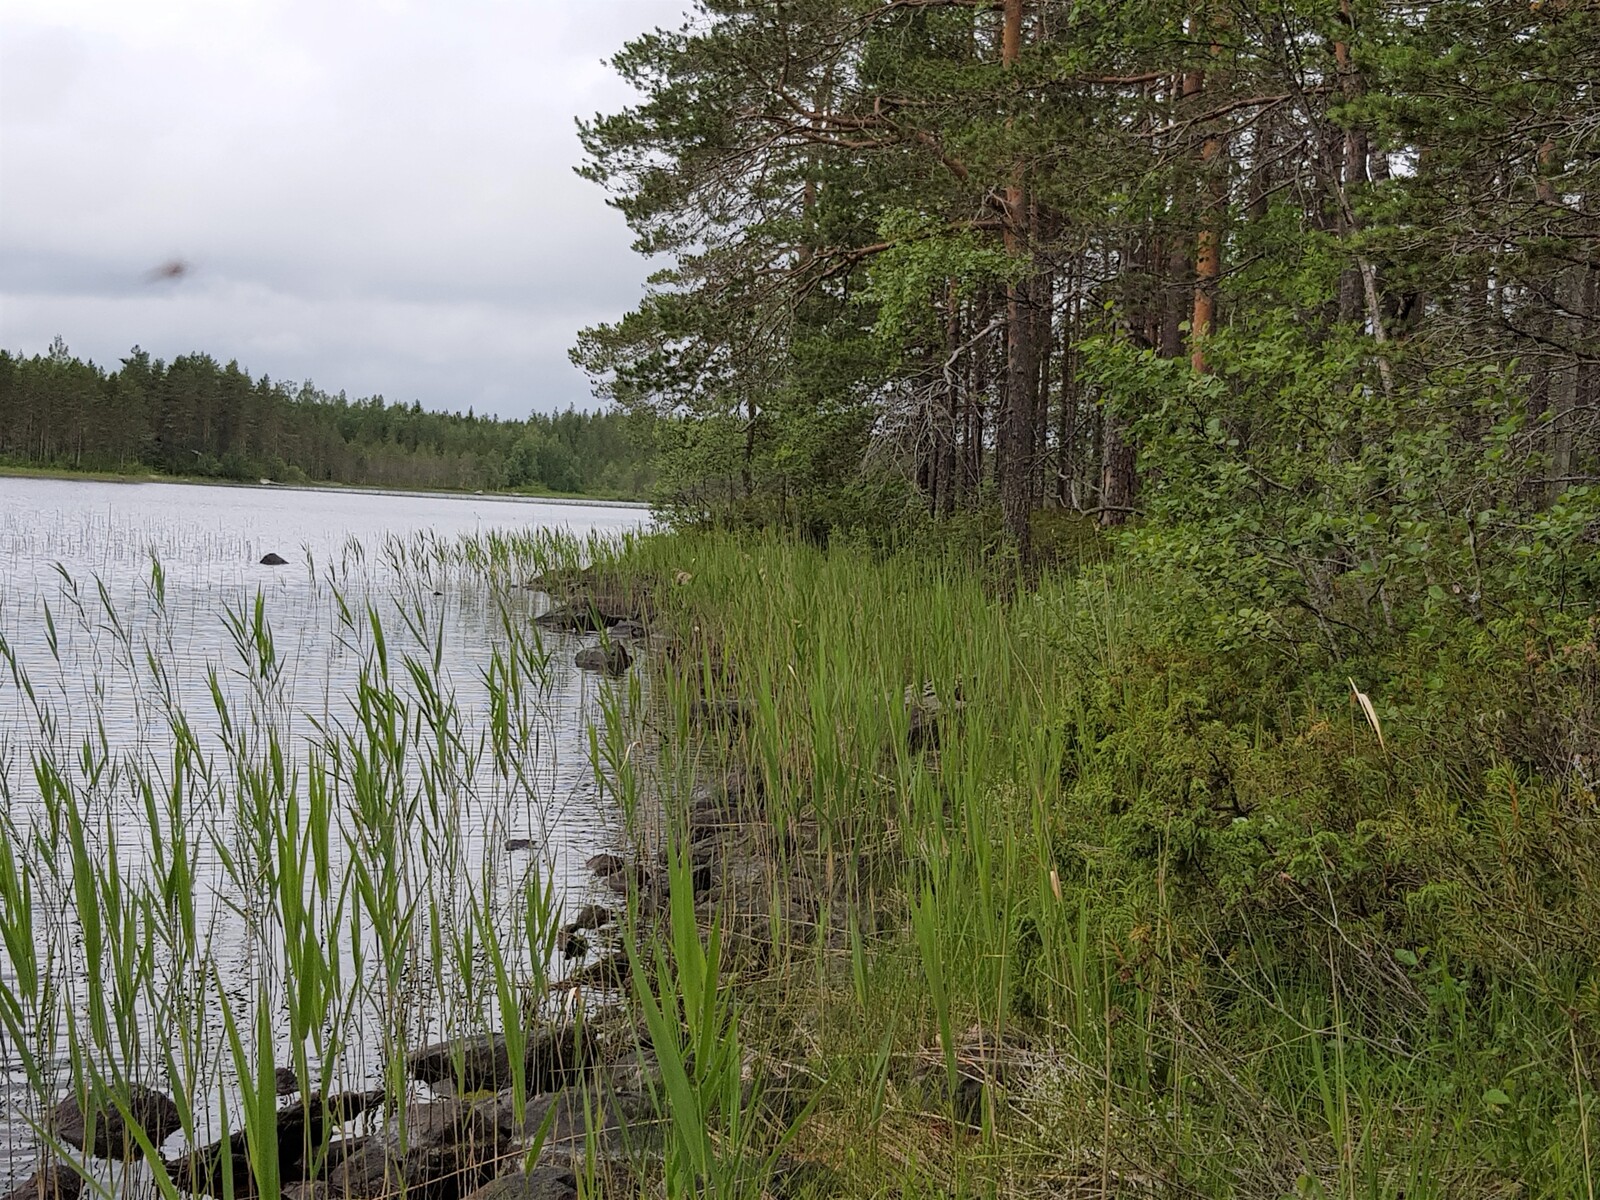 Mäntyvaltainen metsä reunustaa järveä. Kivisessä rantaviivassa kasvaa vesikasveja.